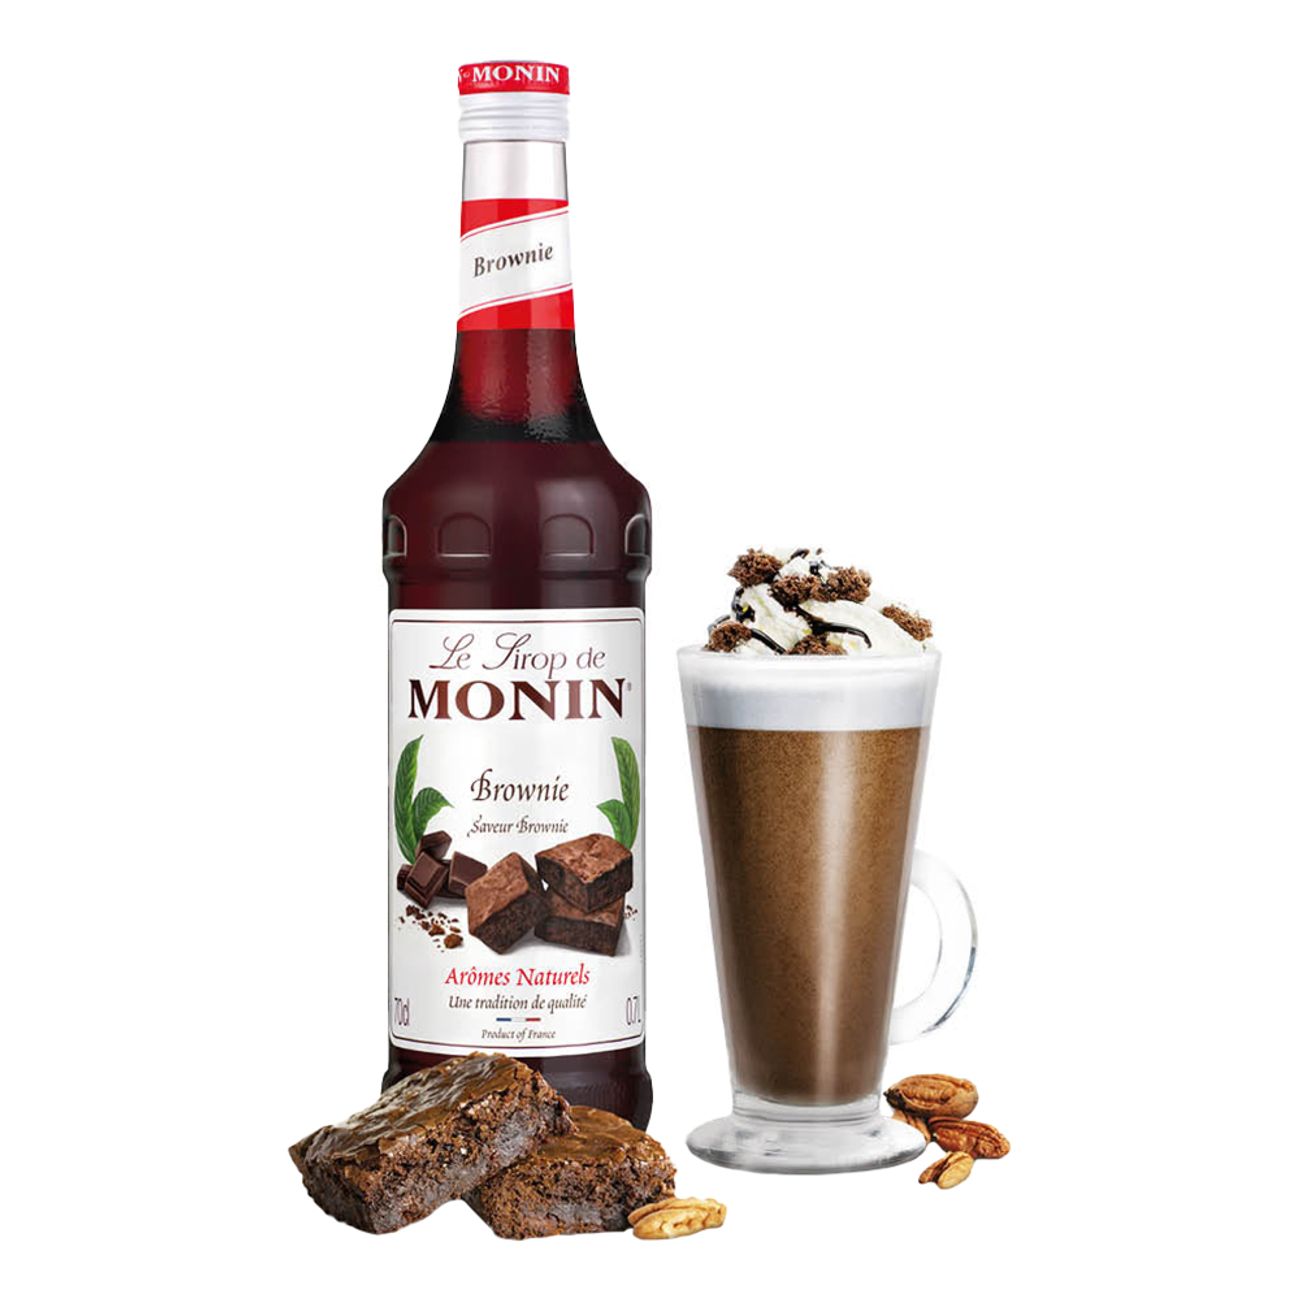 monin-brownie-syrup-71295-3